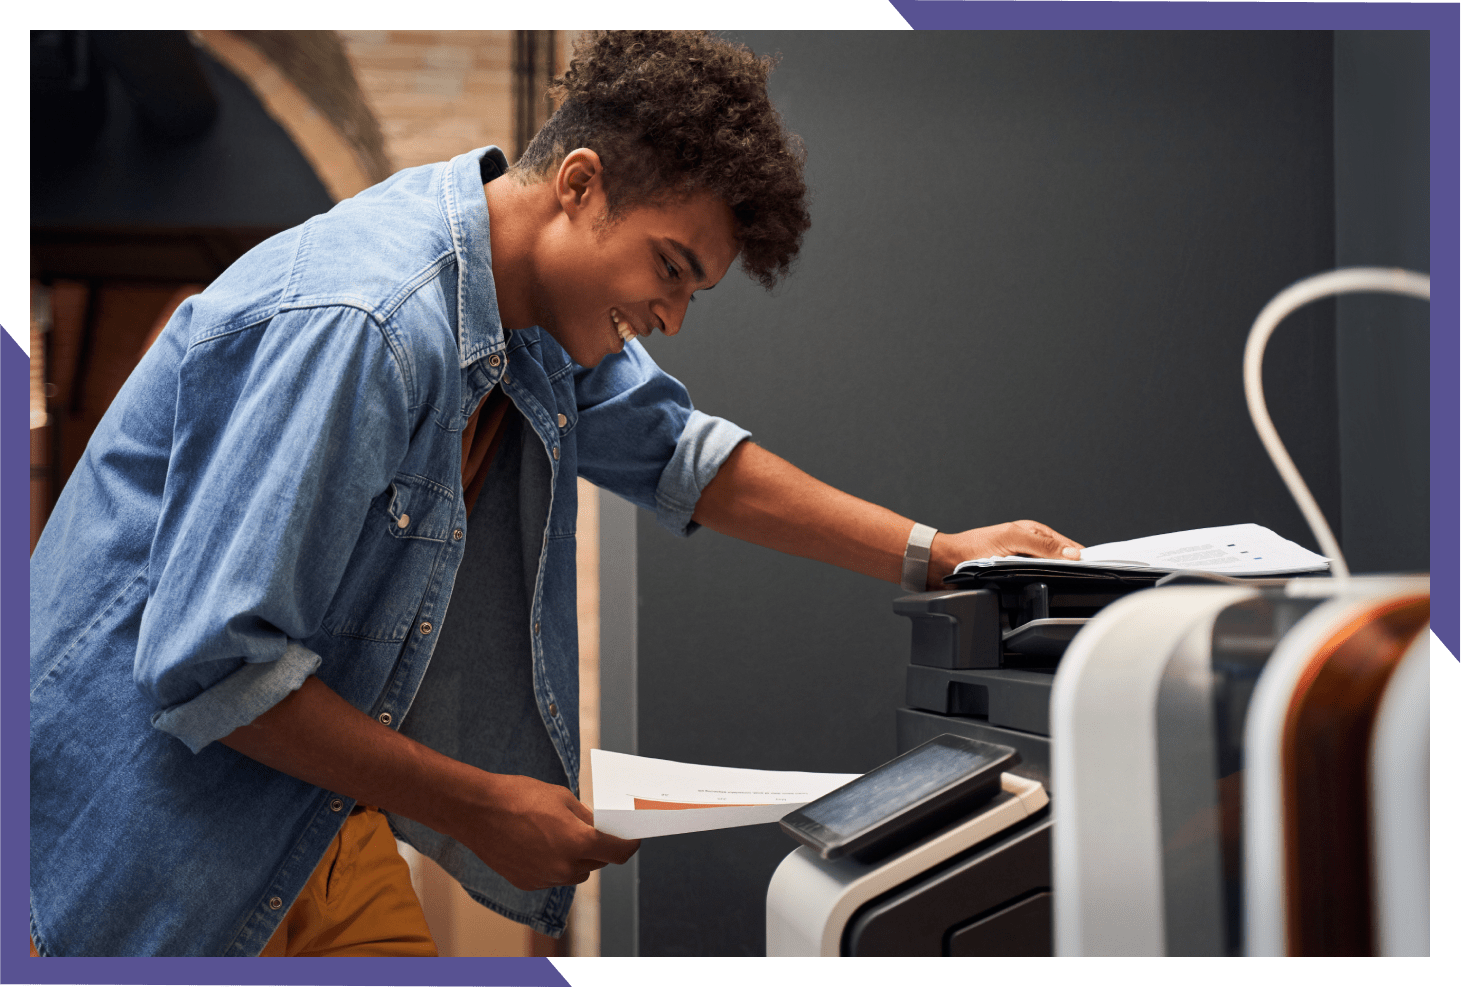 Man Taking a Printout